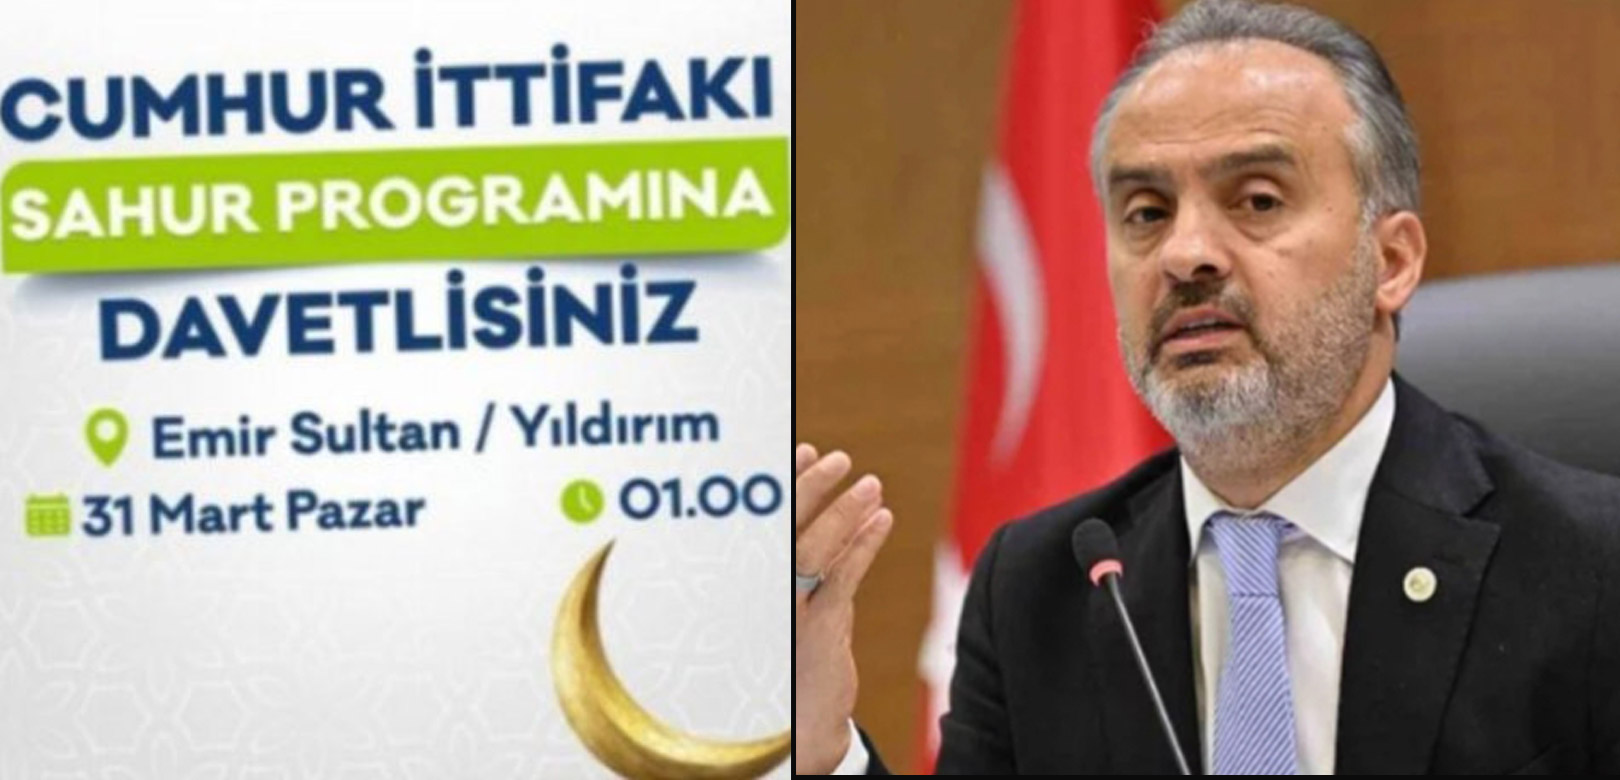 AKP'nin Bursa adayı seçim yasağına uymadı: Sahur programı YSK engeline takıldı